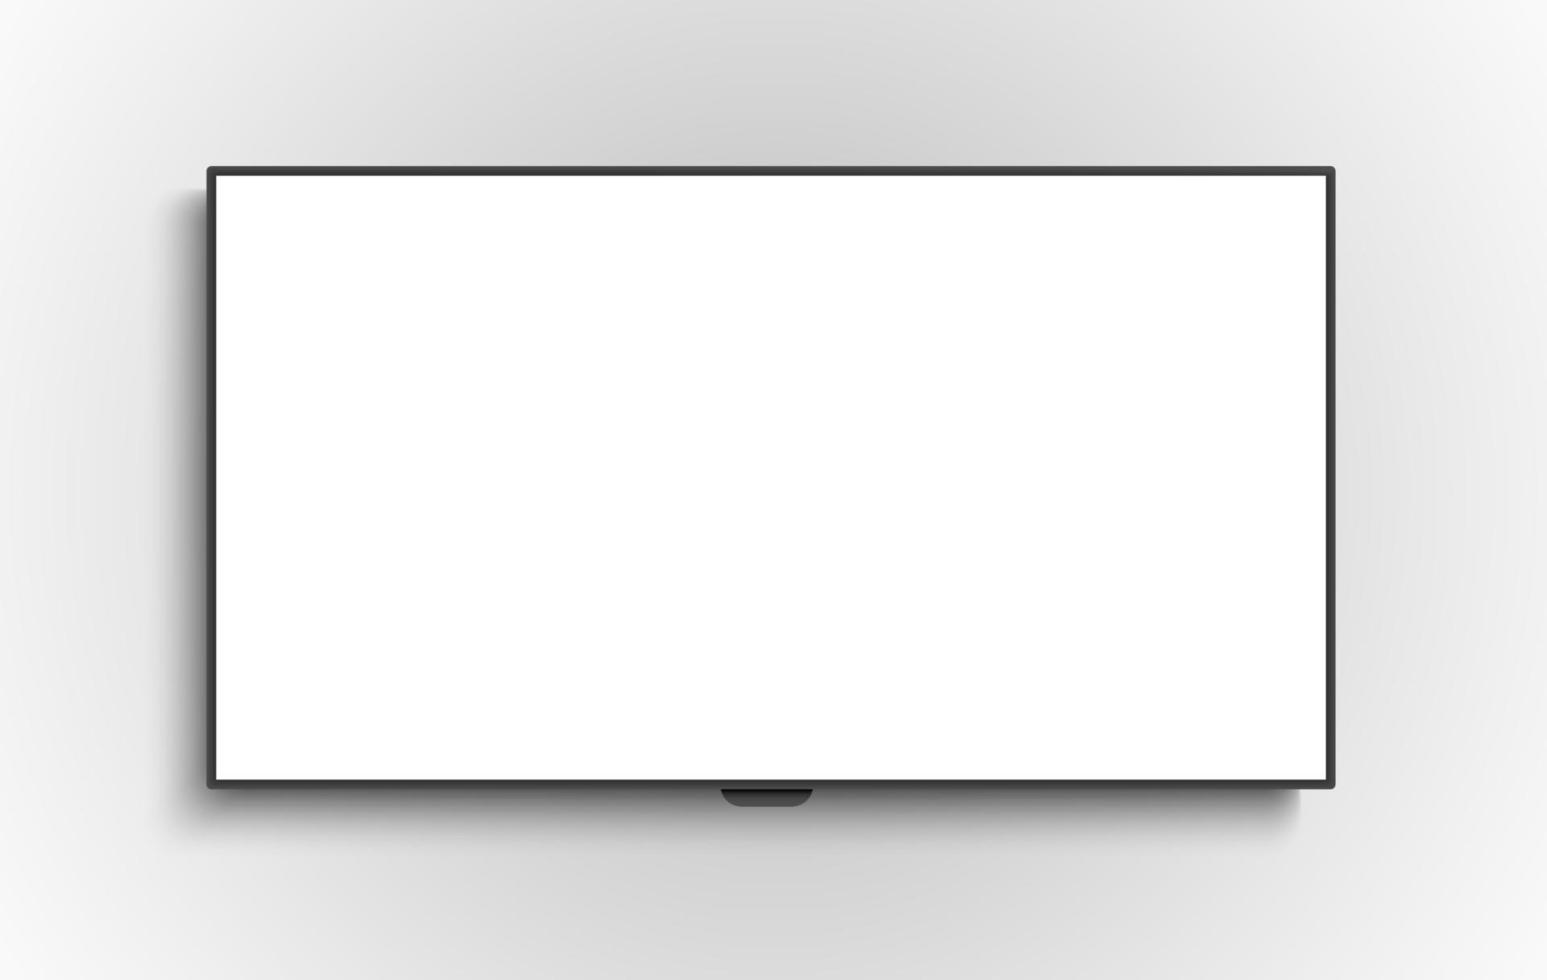 4K-TV-Flachbild-LCD oder Oled, Plasma, realistische Illustration, weißes leeres Monitormodell. Breitbild-Flachbildschirm an der Wand vektor